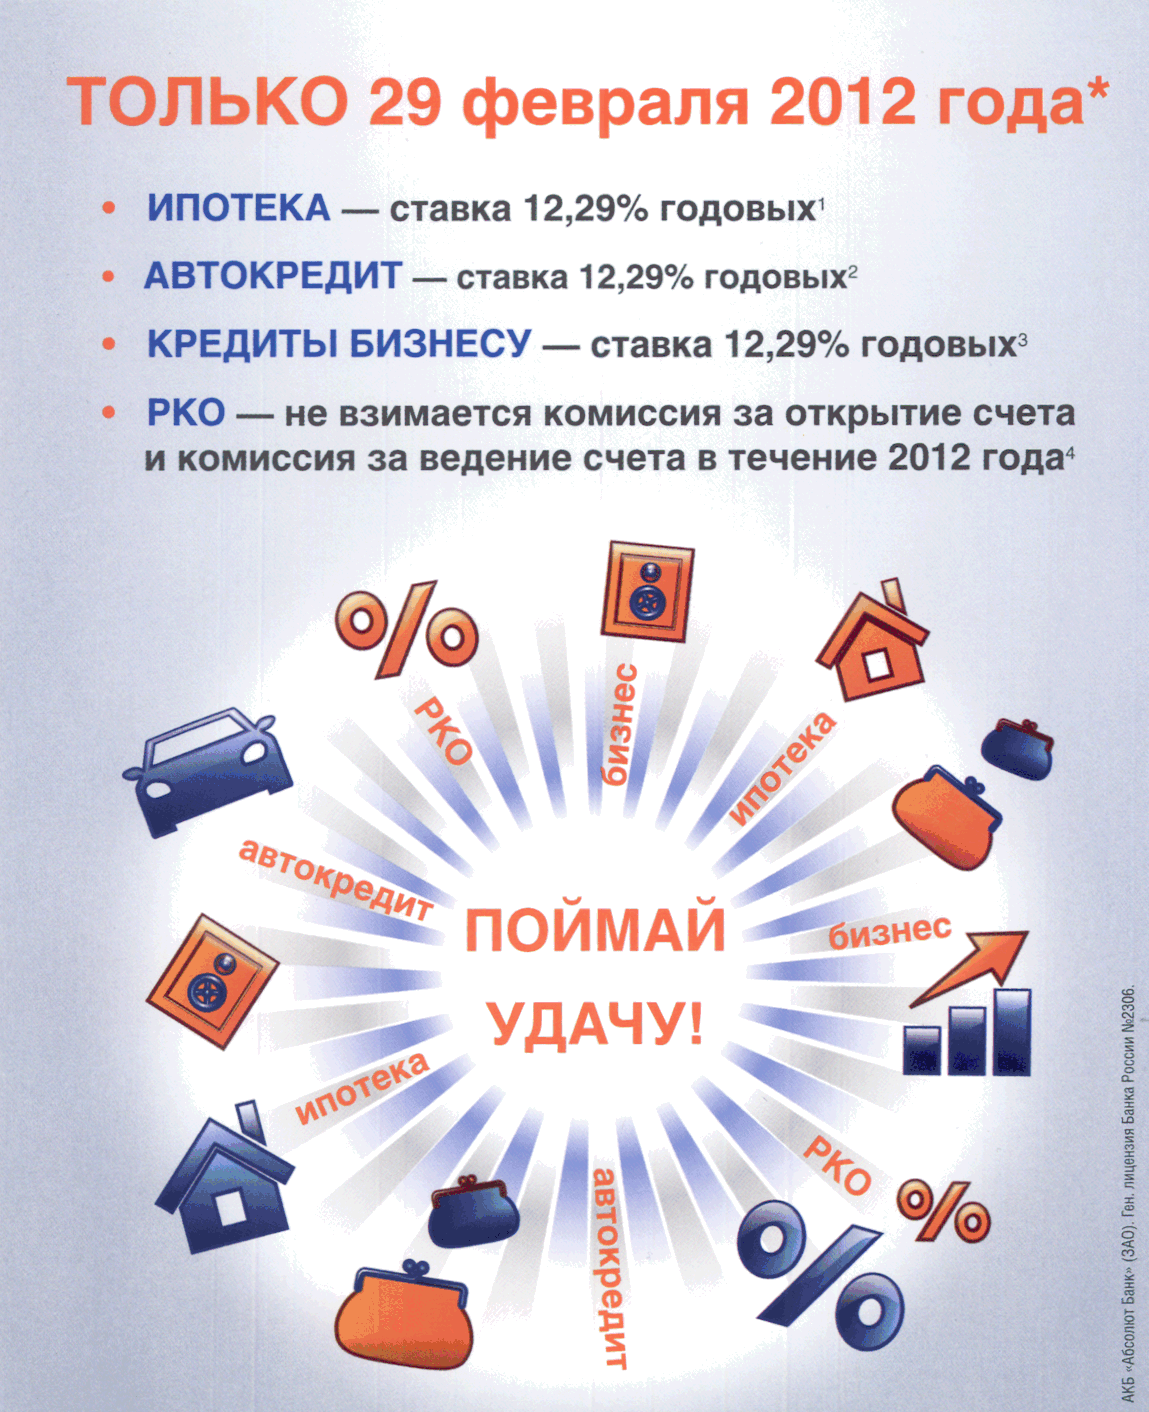 Проценты единой россии